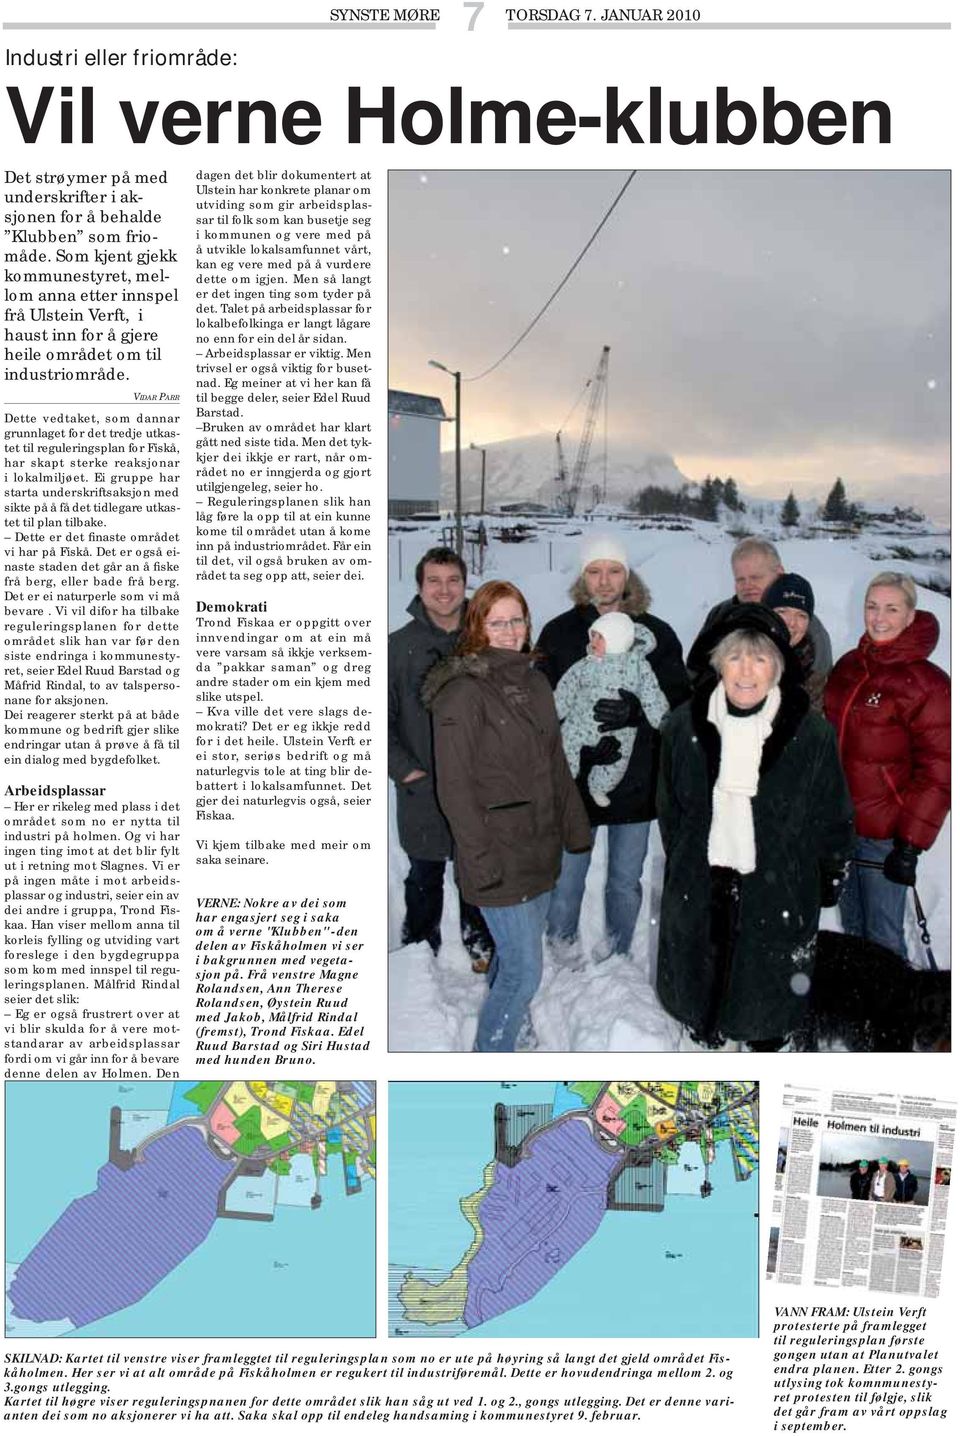 VIDAR PARR Dette vedtaket, som dannar grunnlaget for det tredje utkastet til reguleringsplan for Fiskå, har skapt sterke reaksjonar i lokalmiljøet.